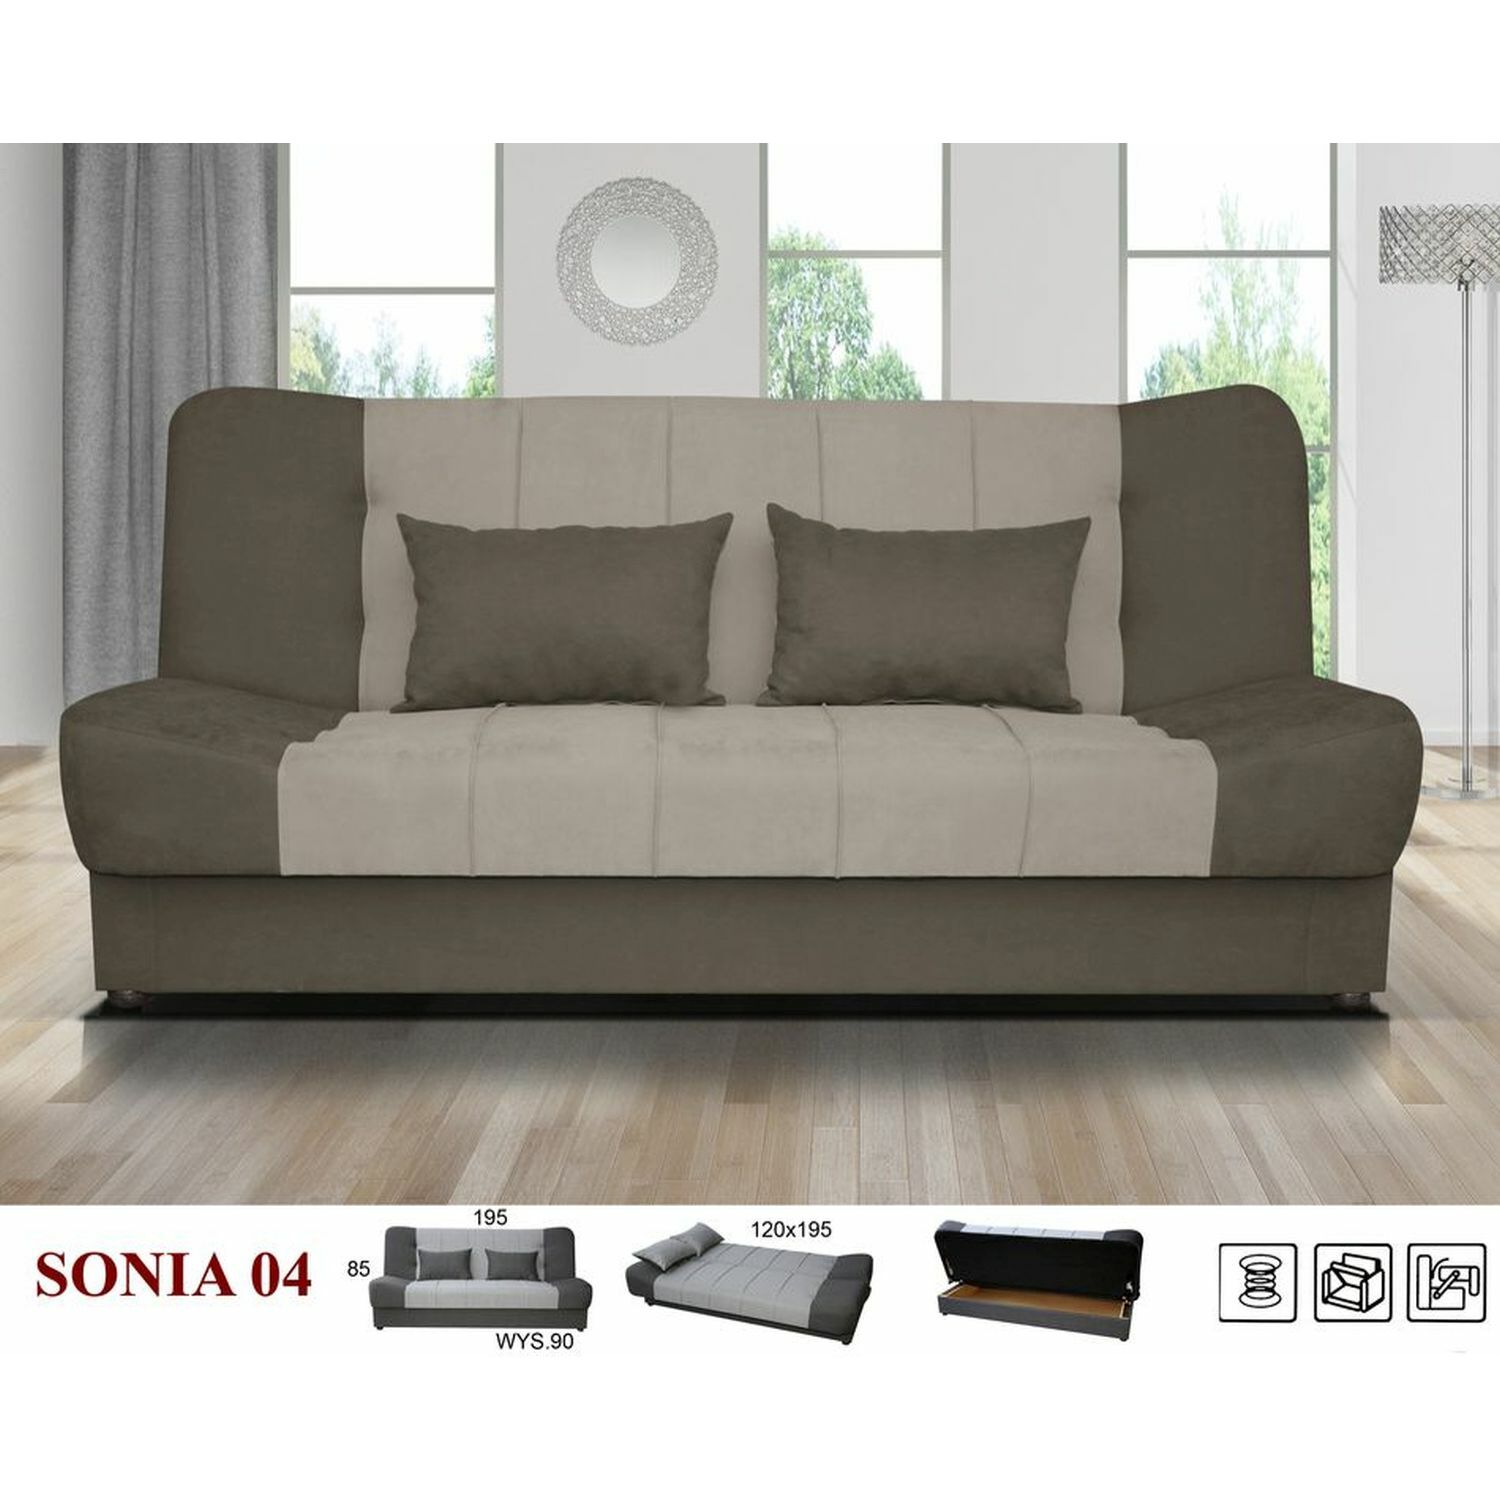 Sonia ágyazható, ágyneműtartós kanapé BARNA SZÍNBEN